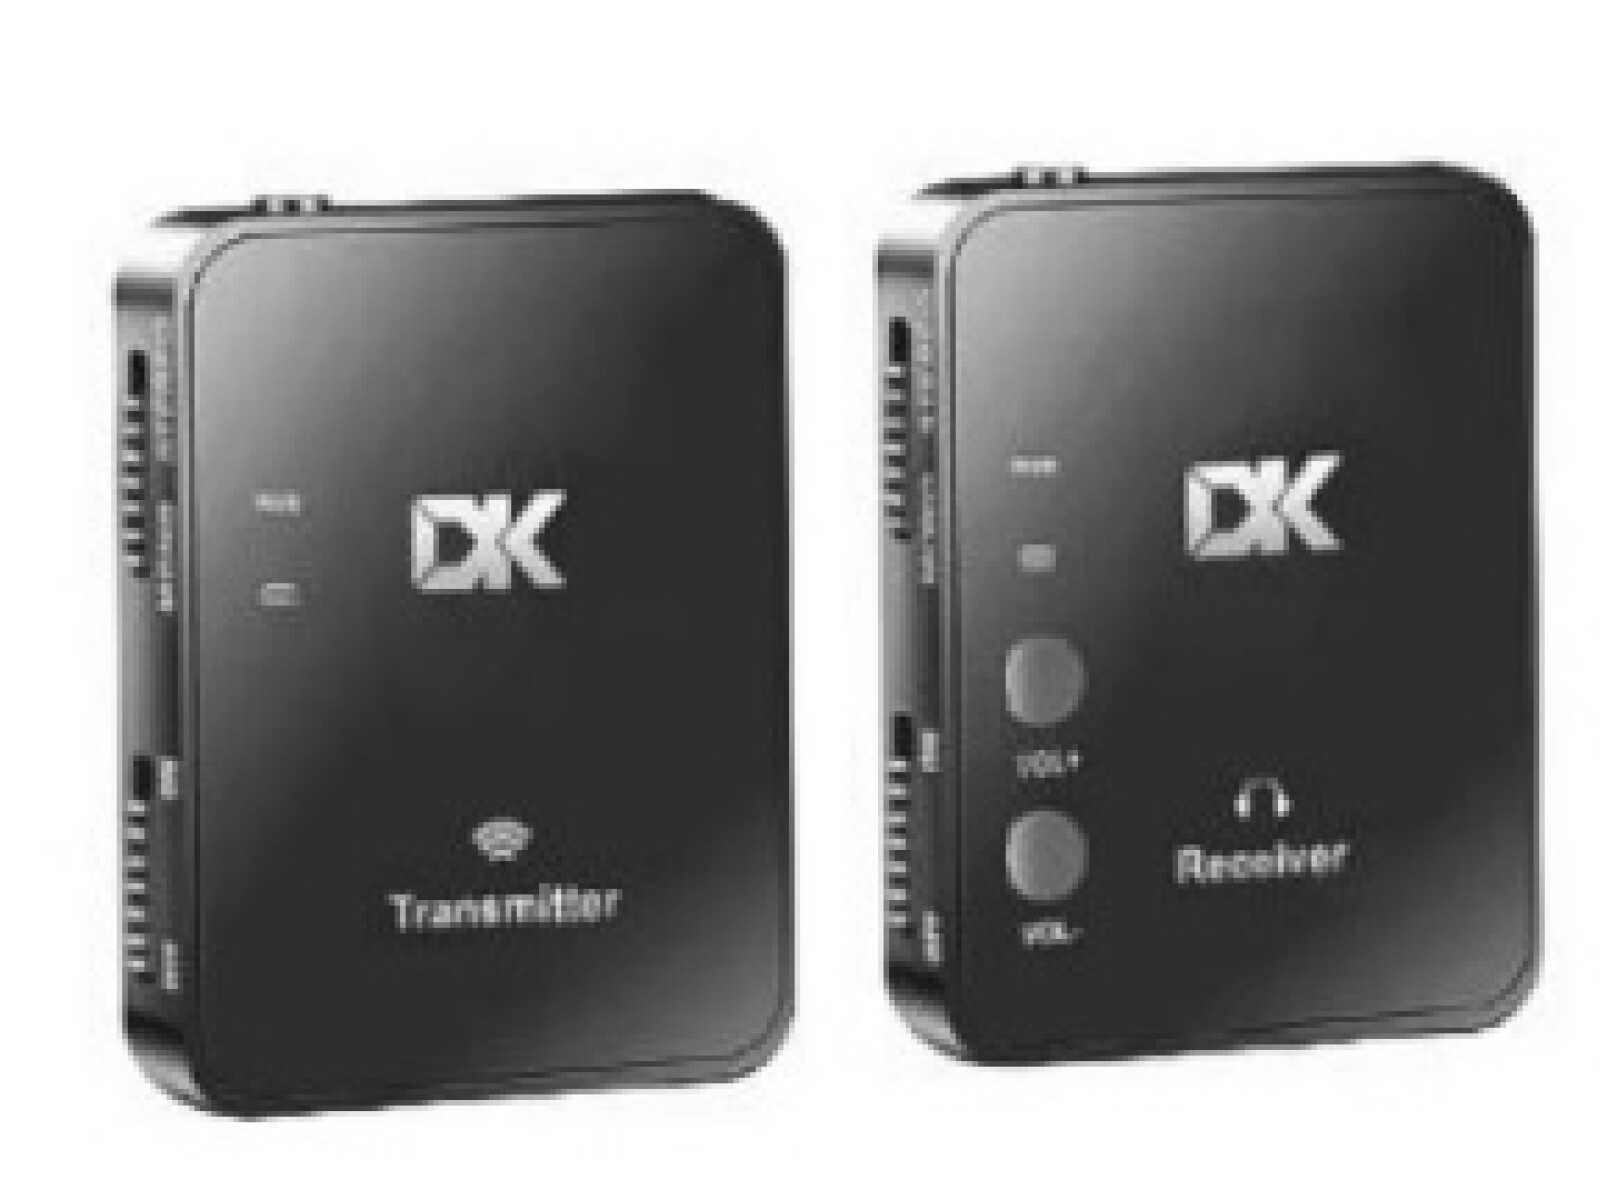 Sistema de monitoreo personal inalámbrico DK Technologies - recargable 